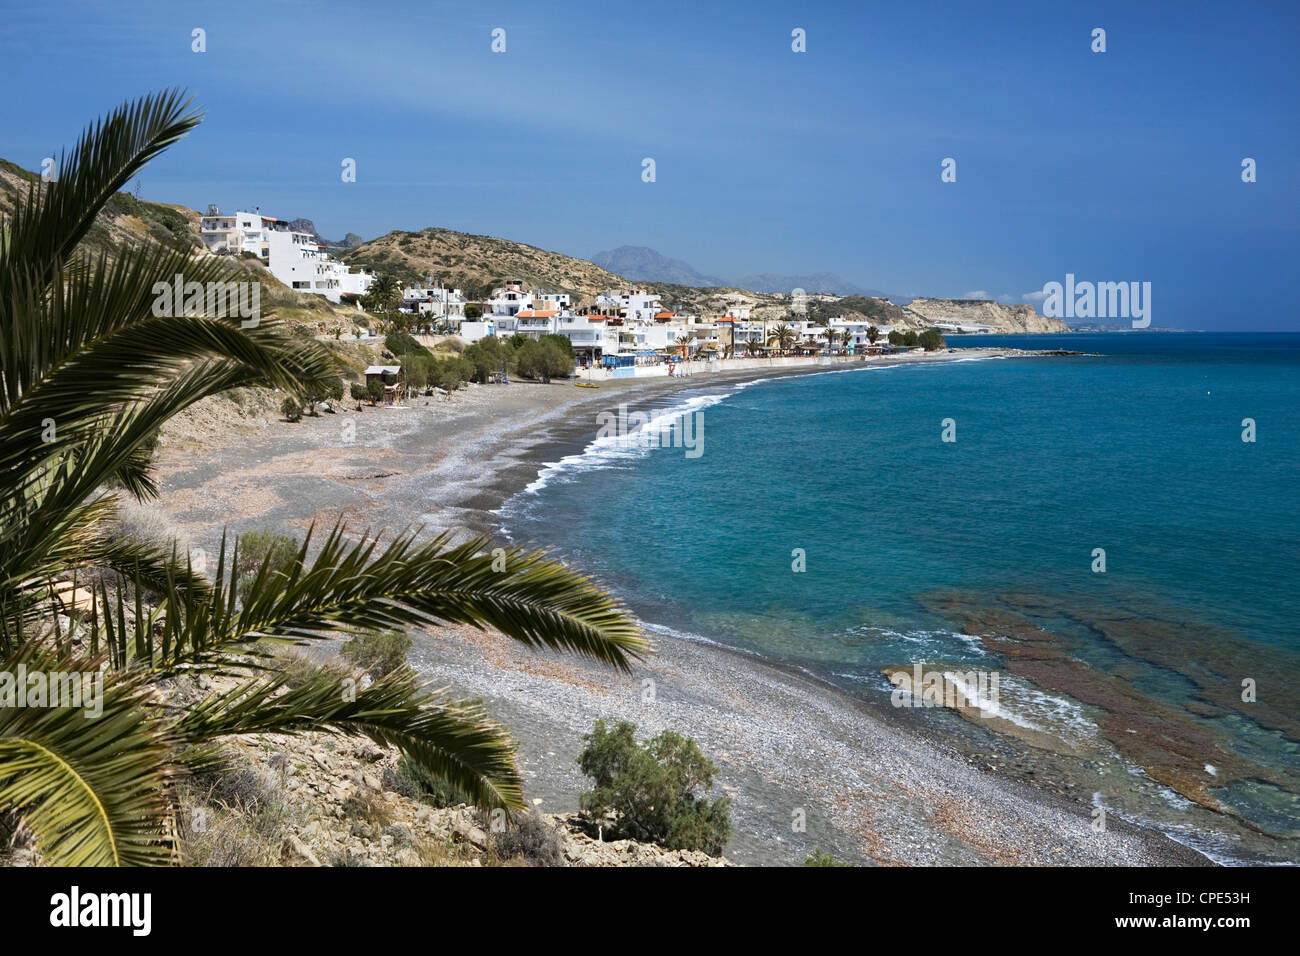 Vue sur la plage, Mirtos, λασίθι, Crète, îles grecques, Grèce, Europe Banque D'Images